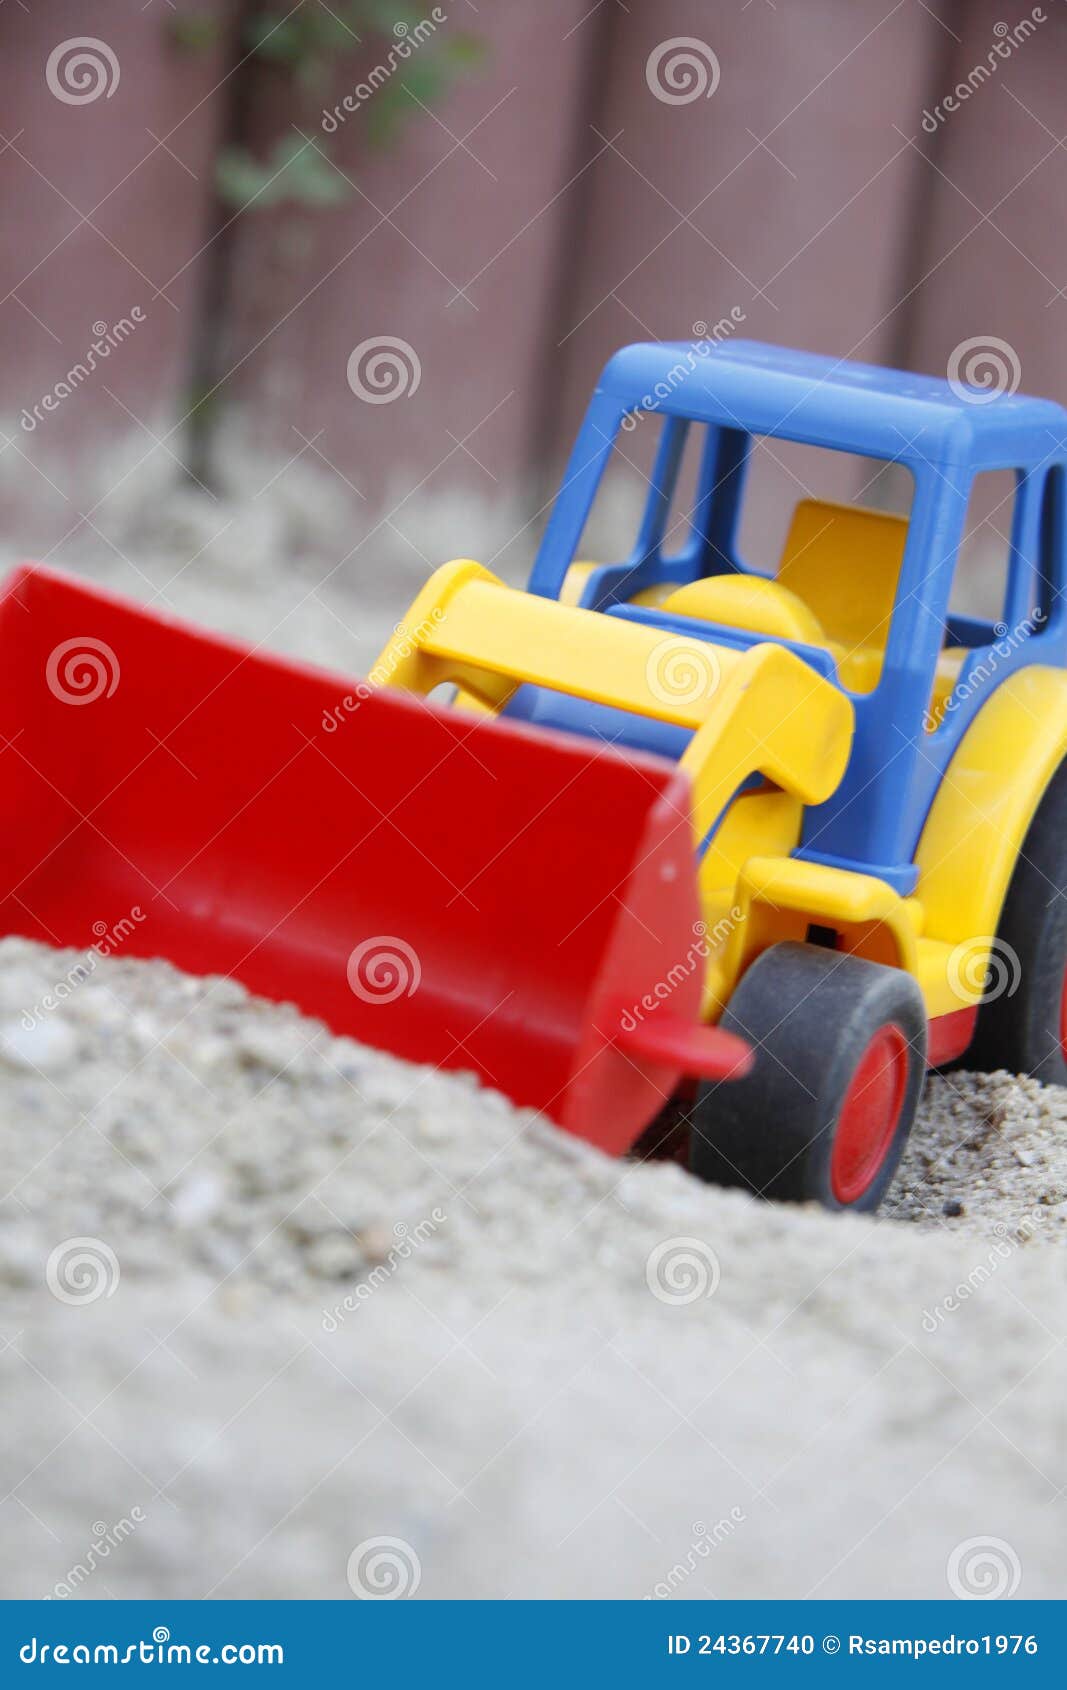 children's toy, an excavator